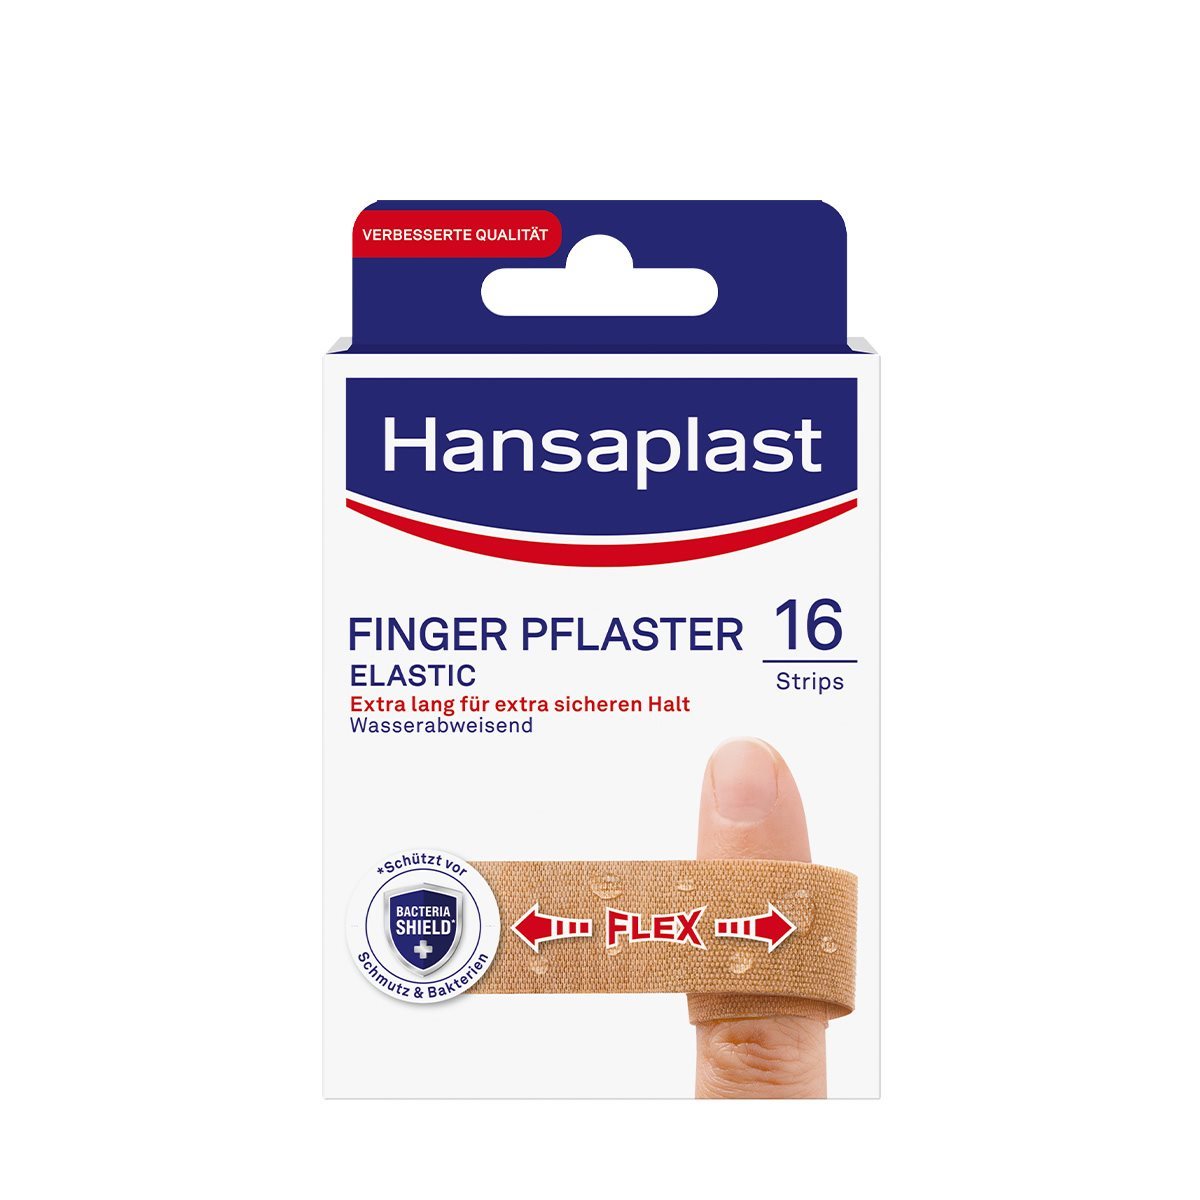 Hansaplast Elastic Fingerstrips Pflaster (16 Strips), extra lange